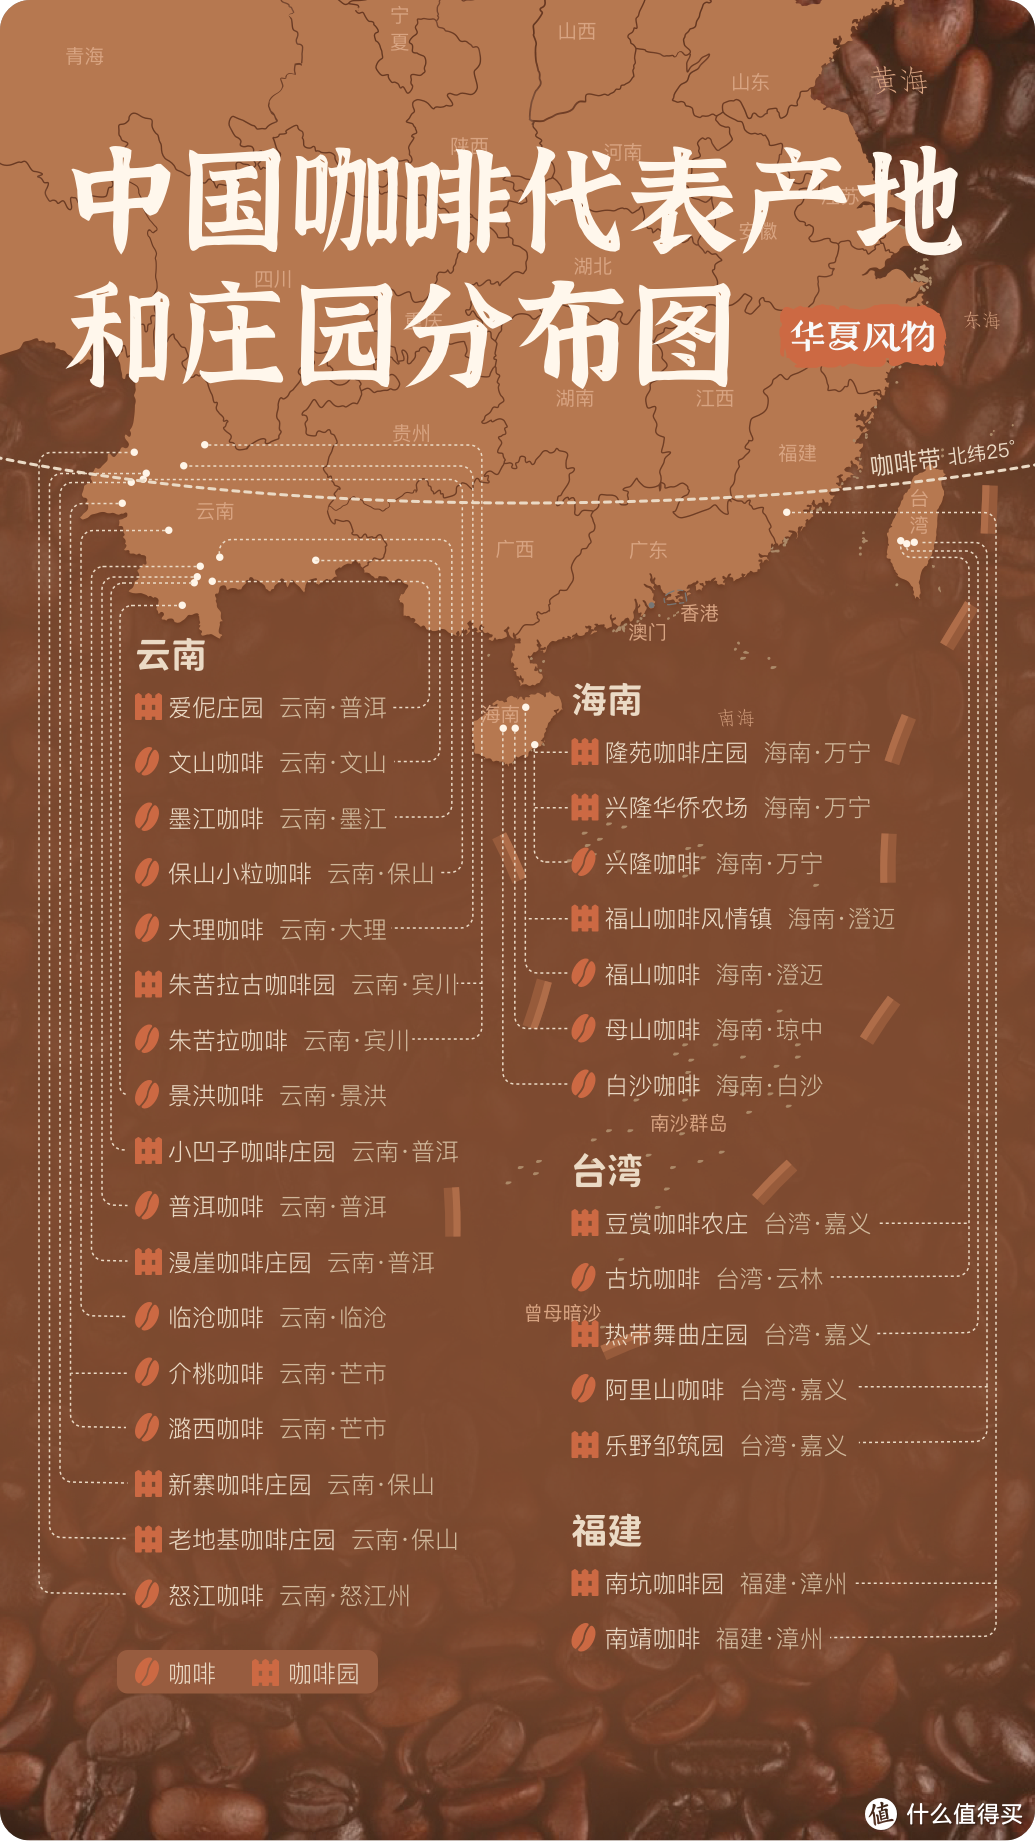 中国咖啡代表产地和庄园分布图 ©华夏风物